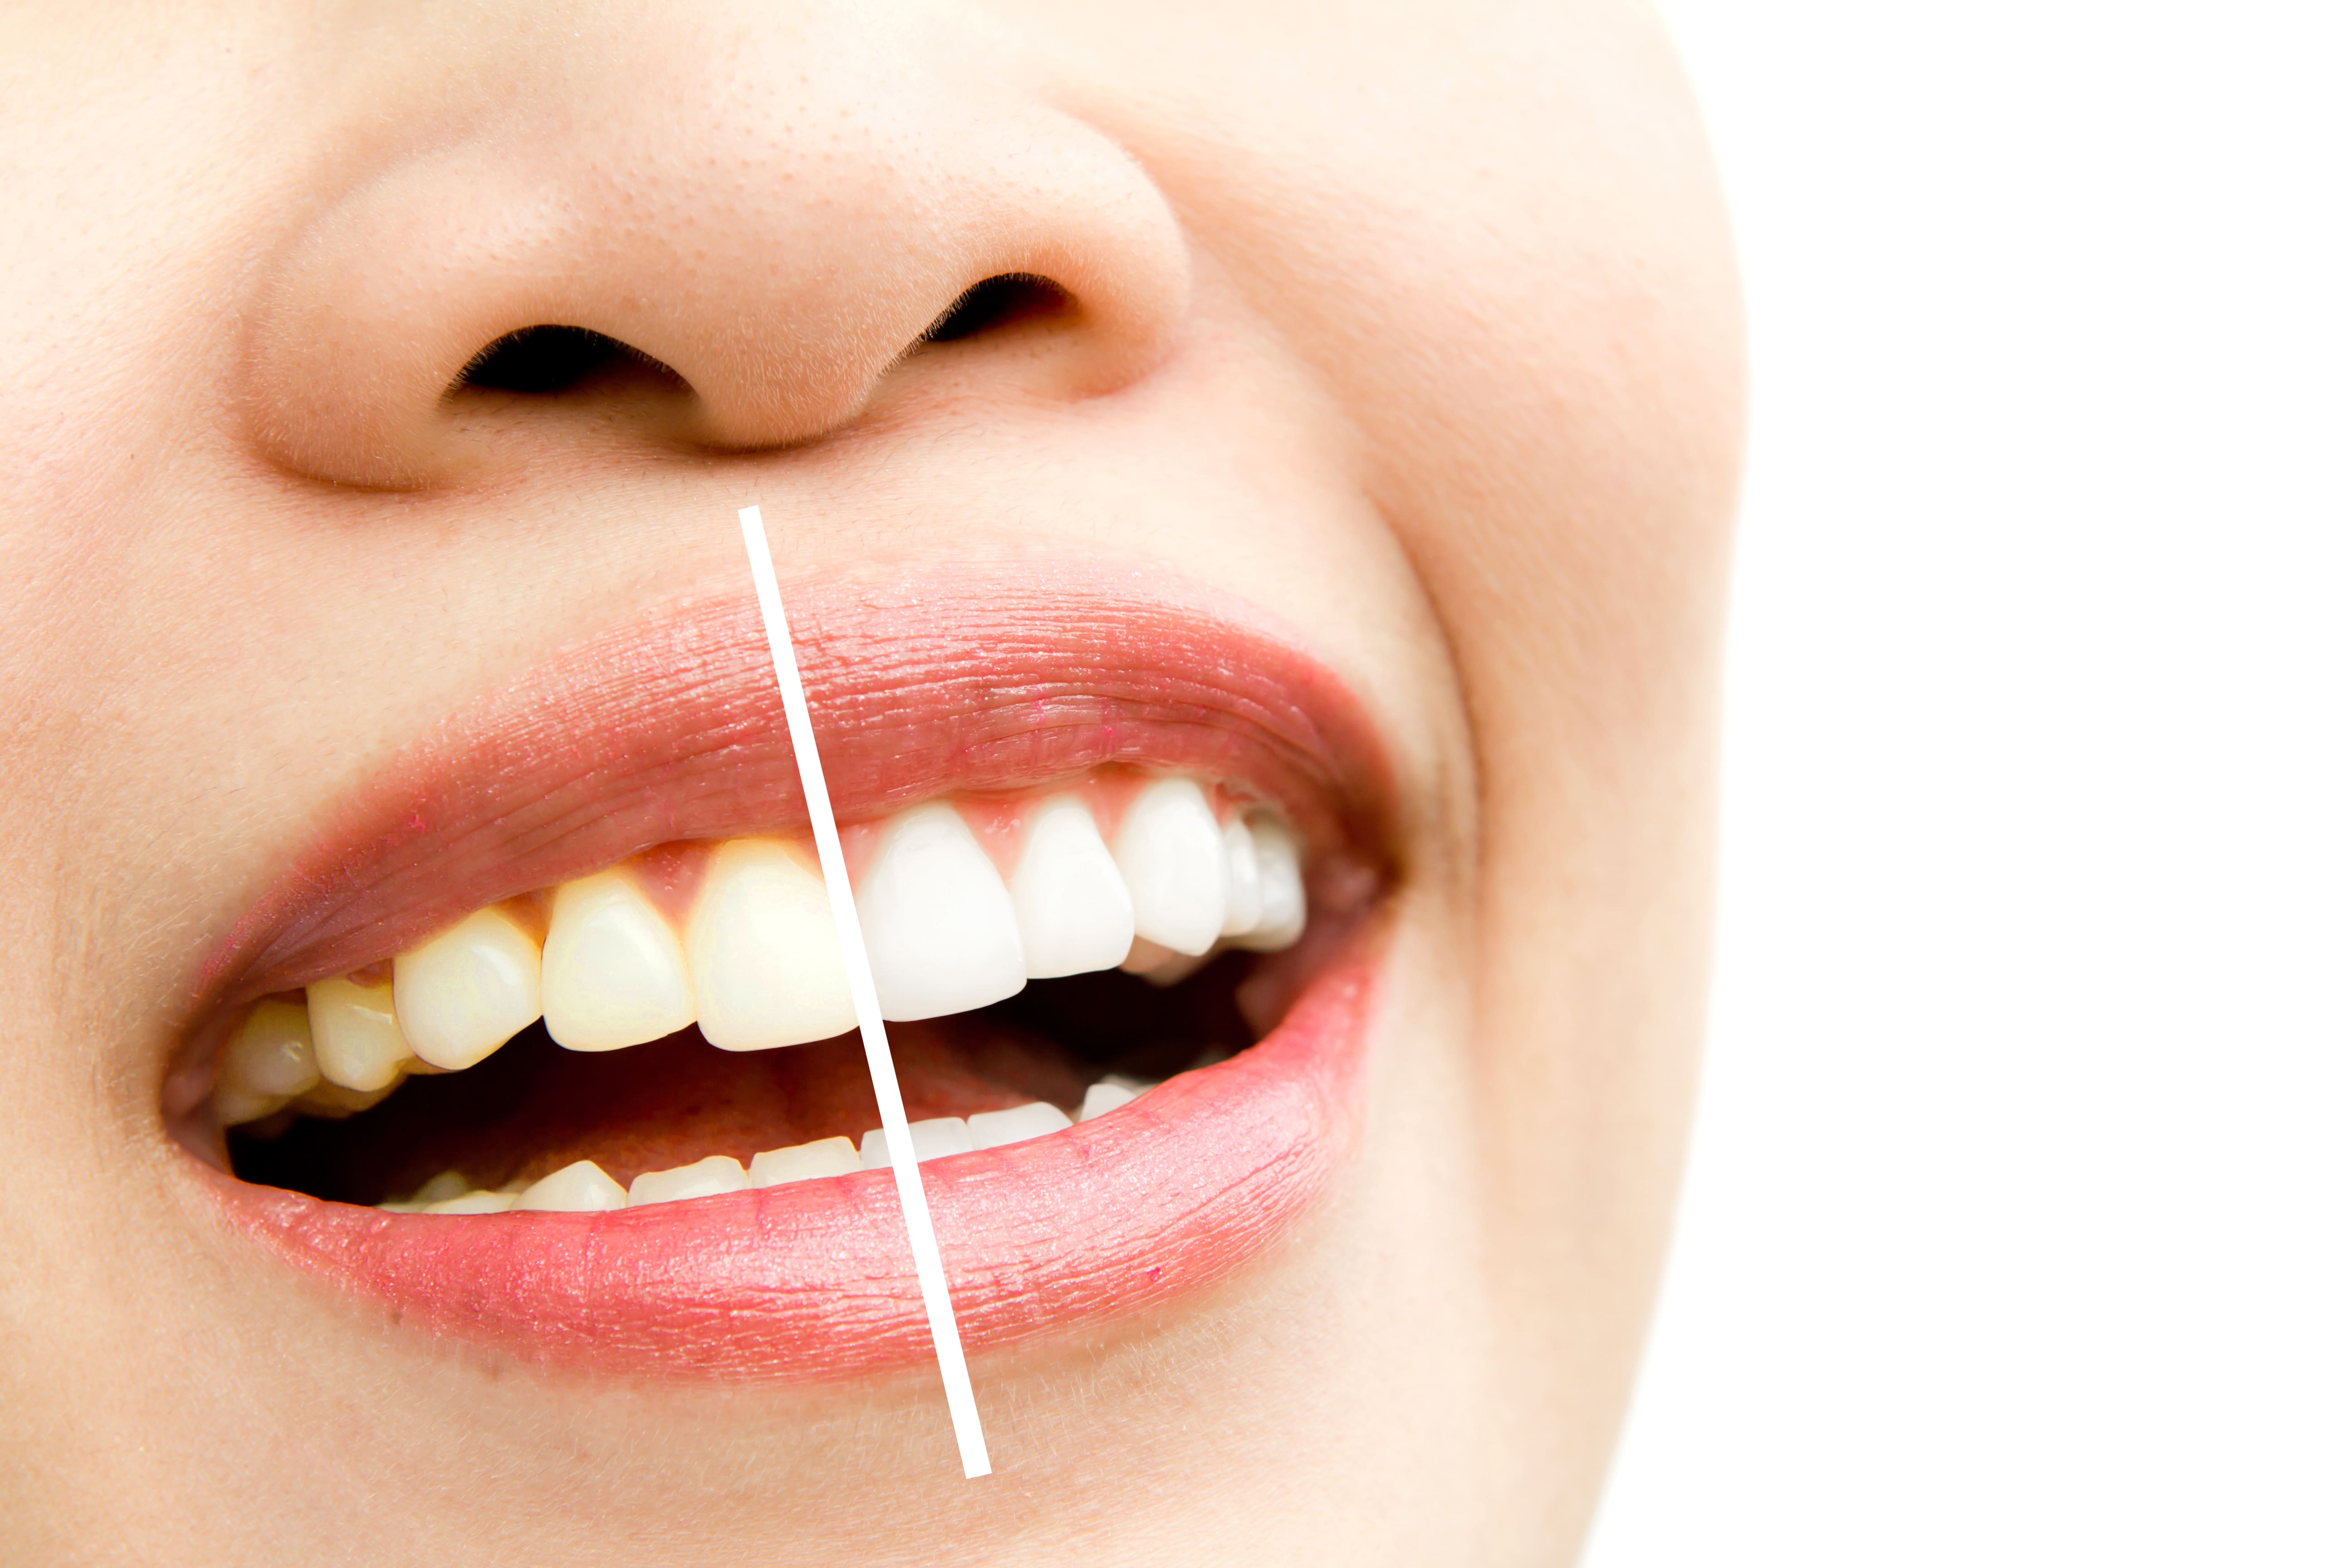 Teeth Whitening and Teeth Bleaching